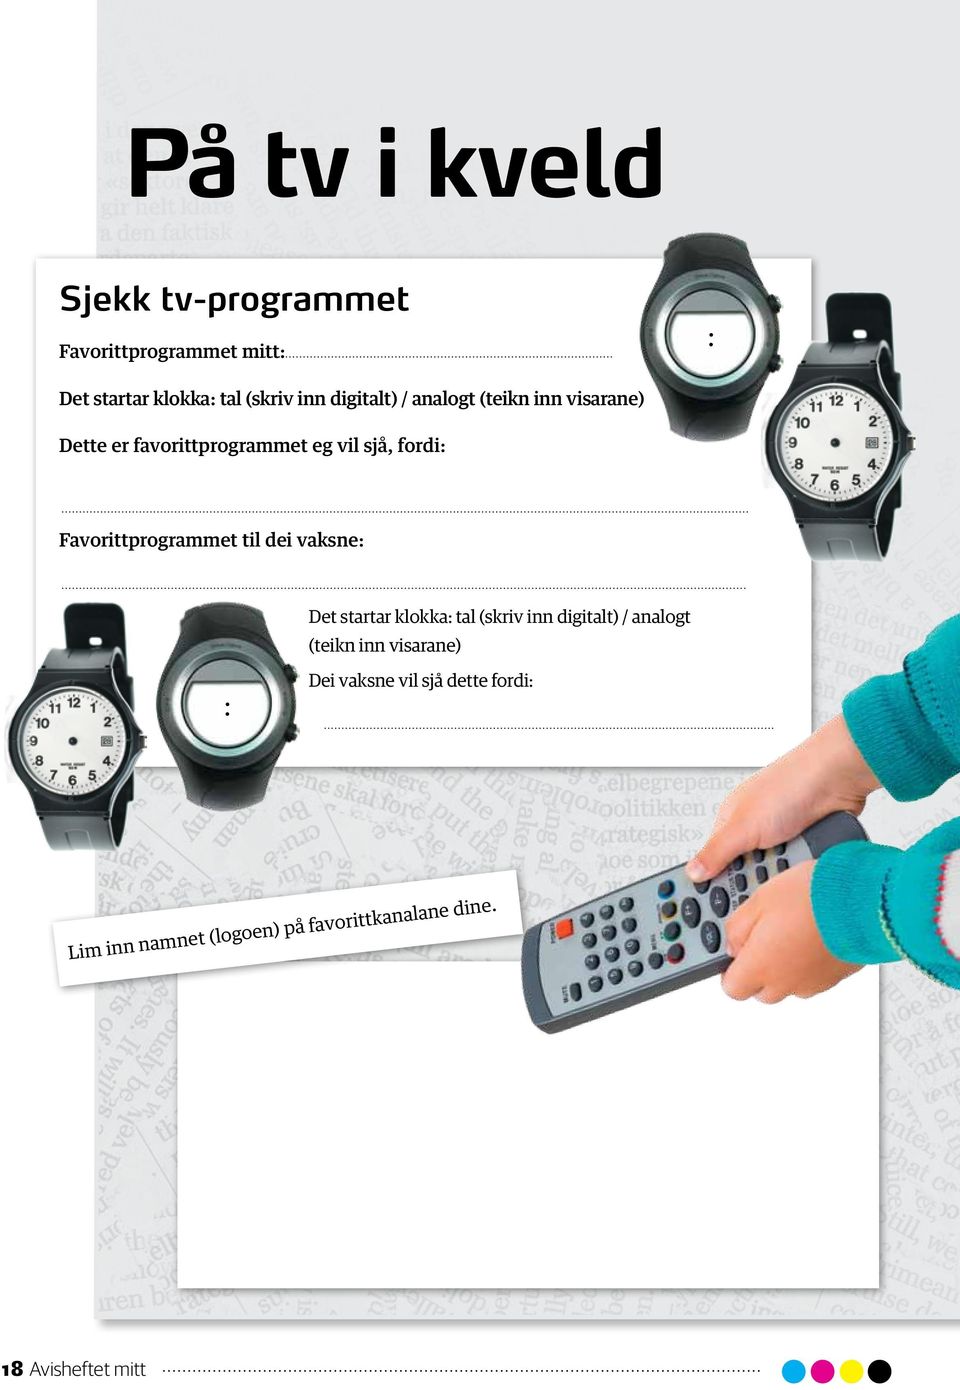 Favorittprogrammet til dei vaksne: Det startar klokka: tal (skriv inn digitalt) / analogt (teikn